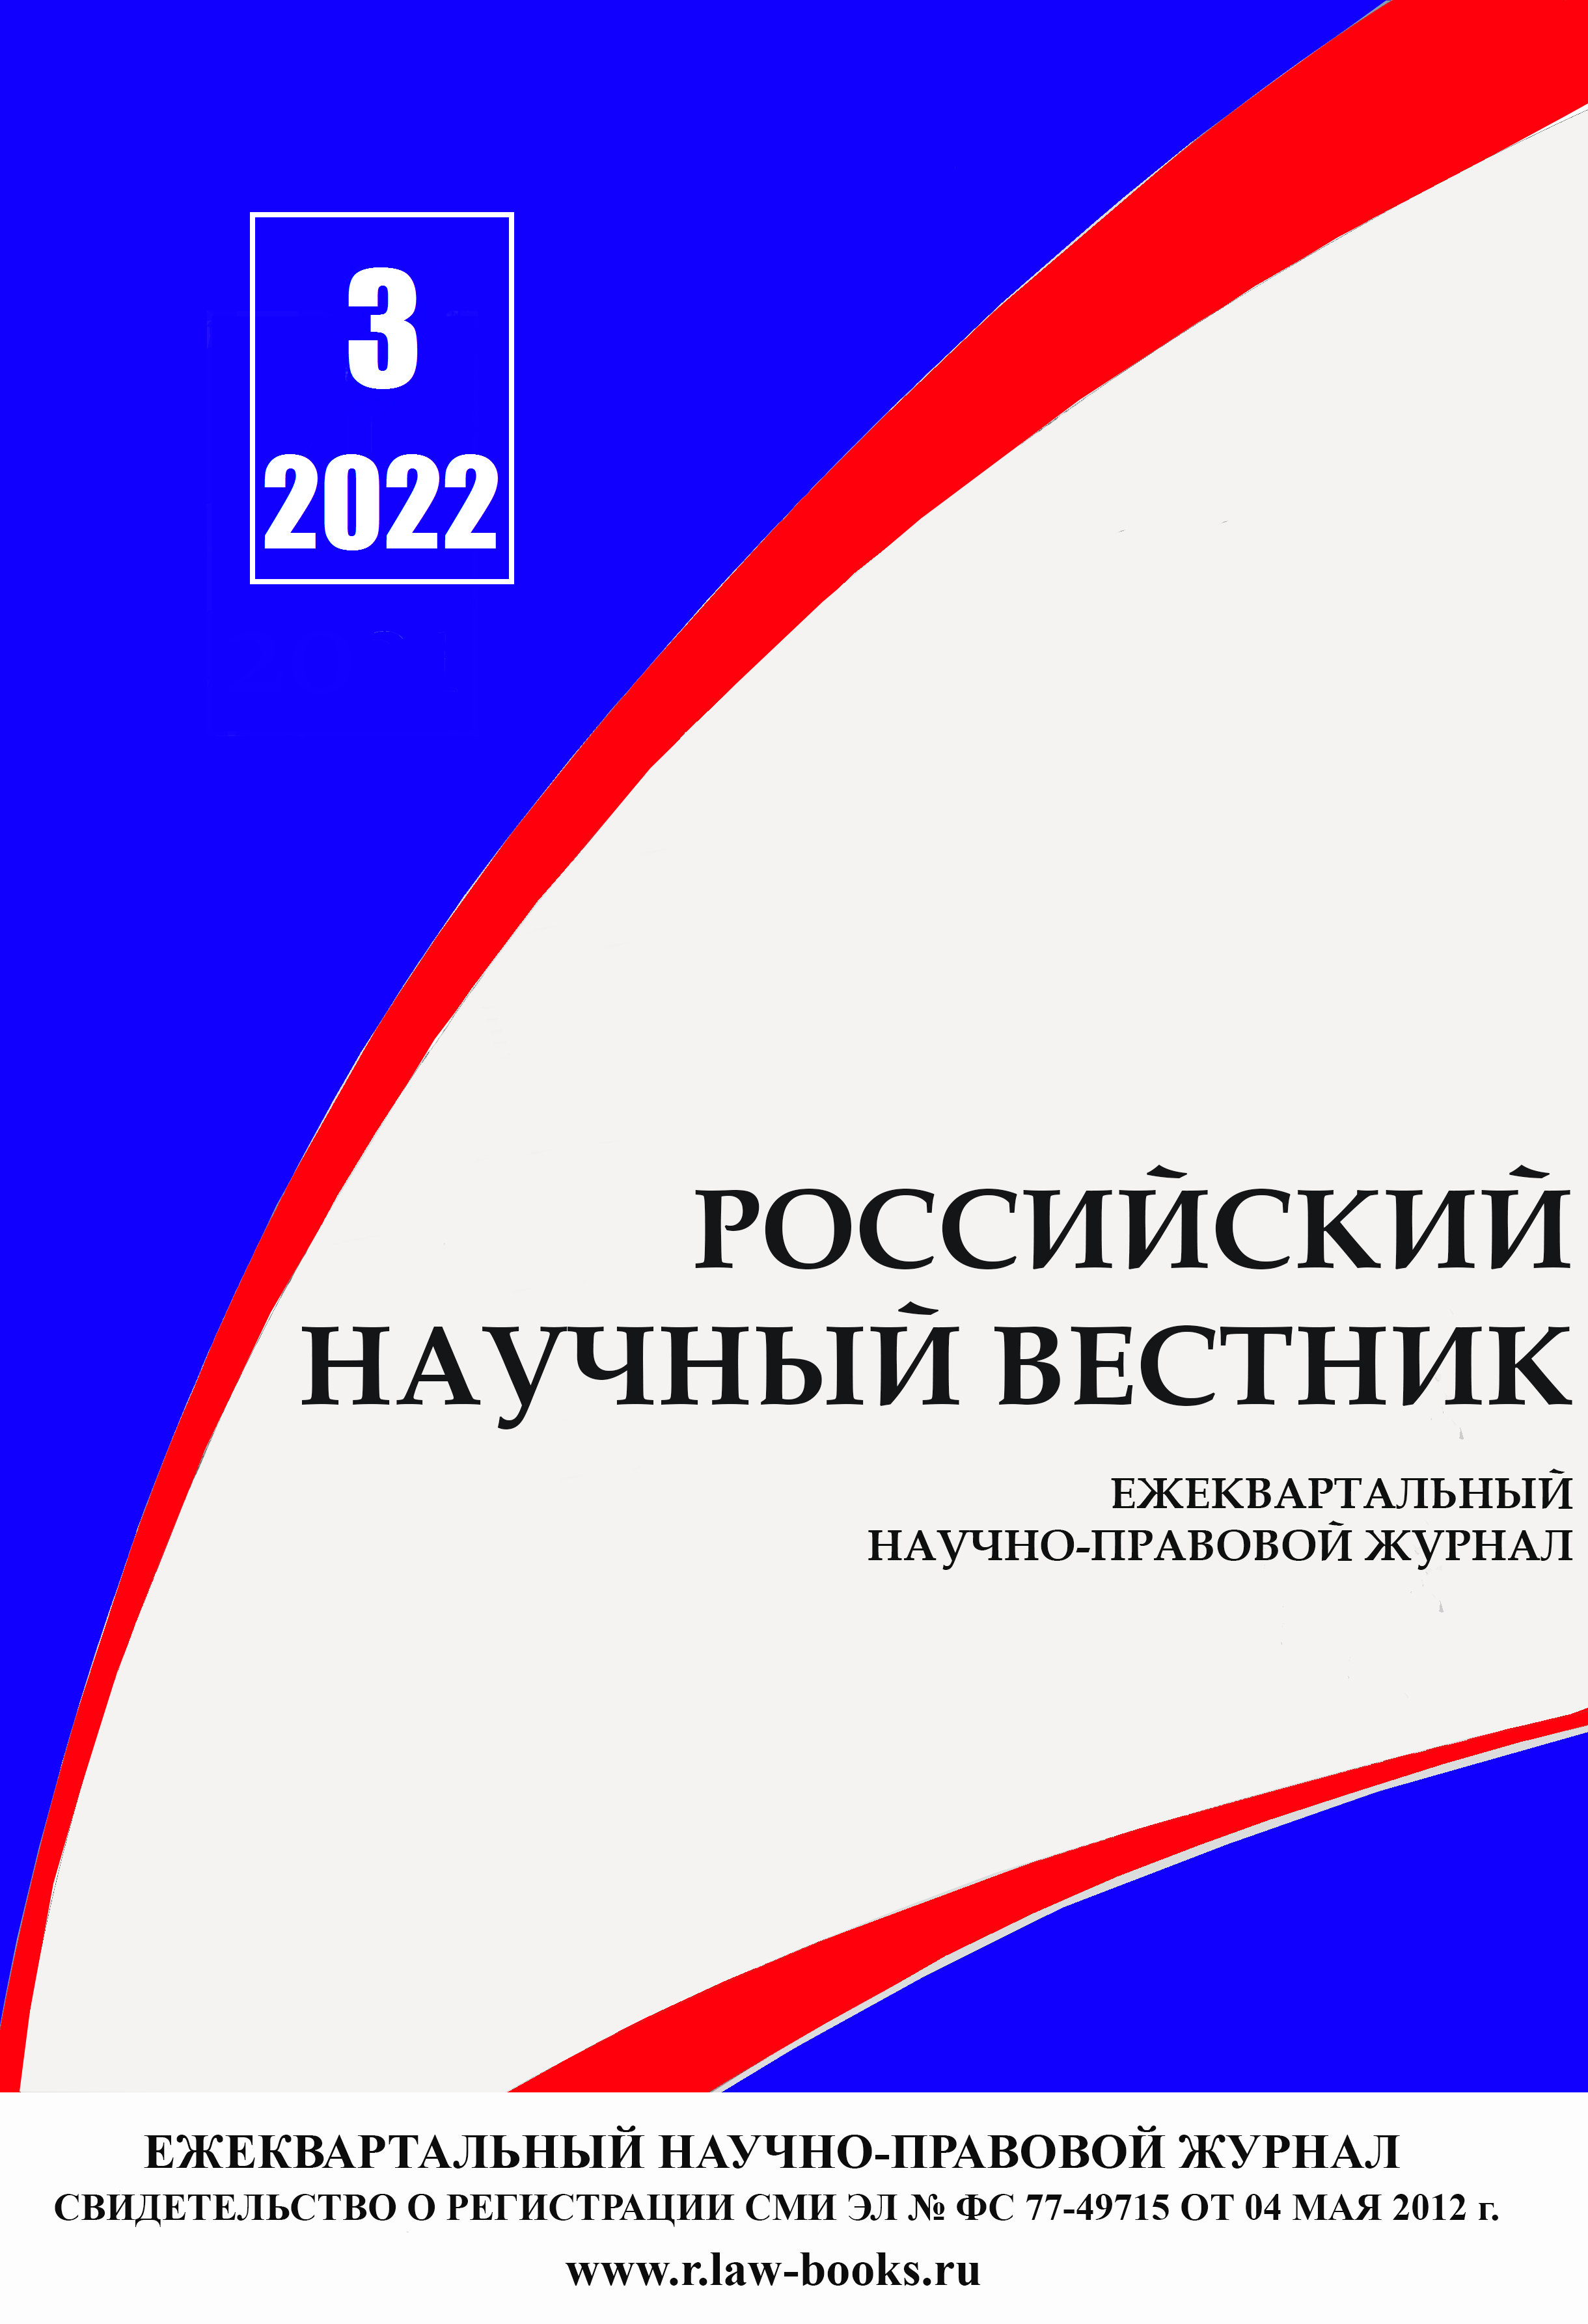 You are currently viewing Российский научный вестник № 3 2022